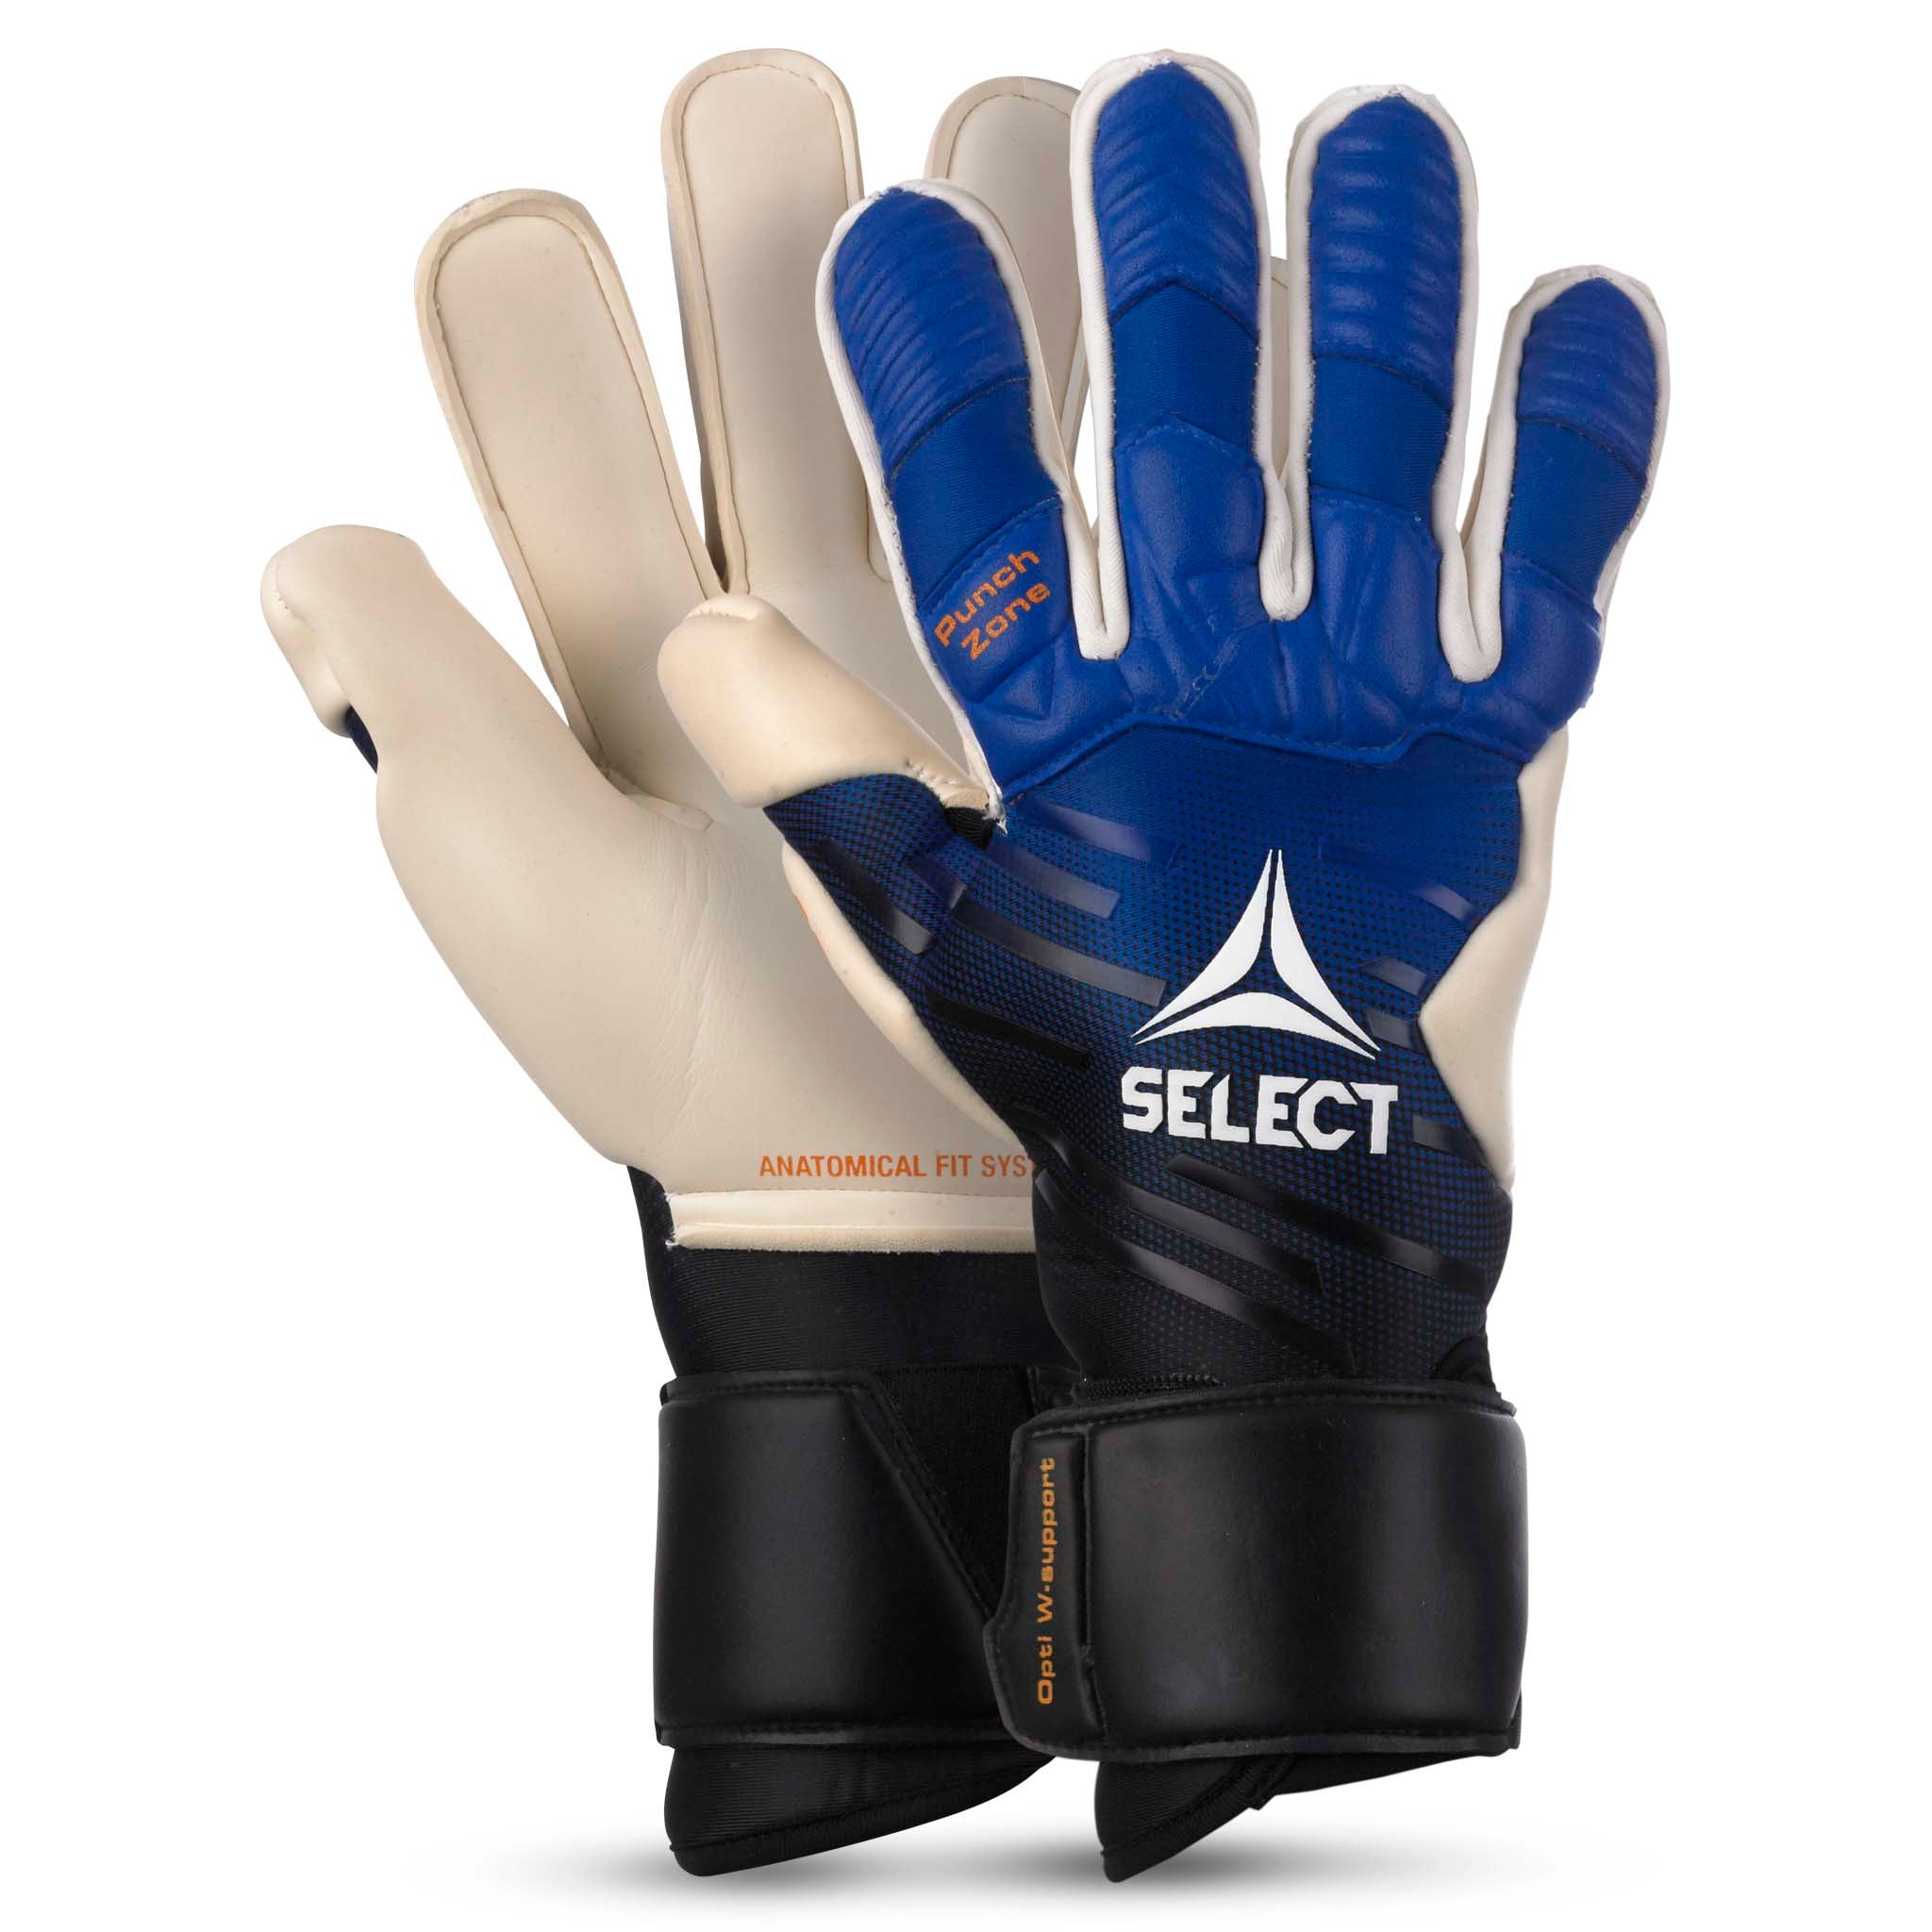 Goalkeeper gloves - 93 Elite #colour_blue/white